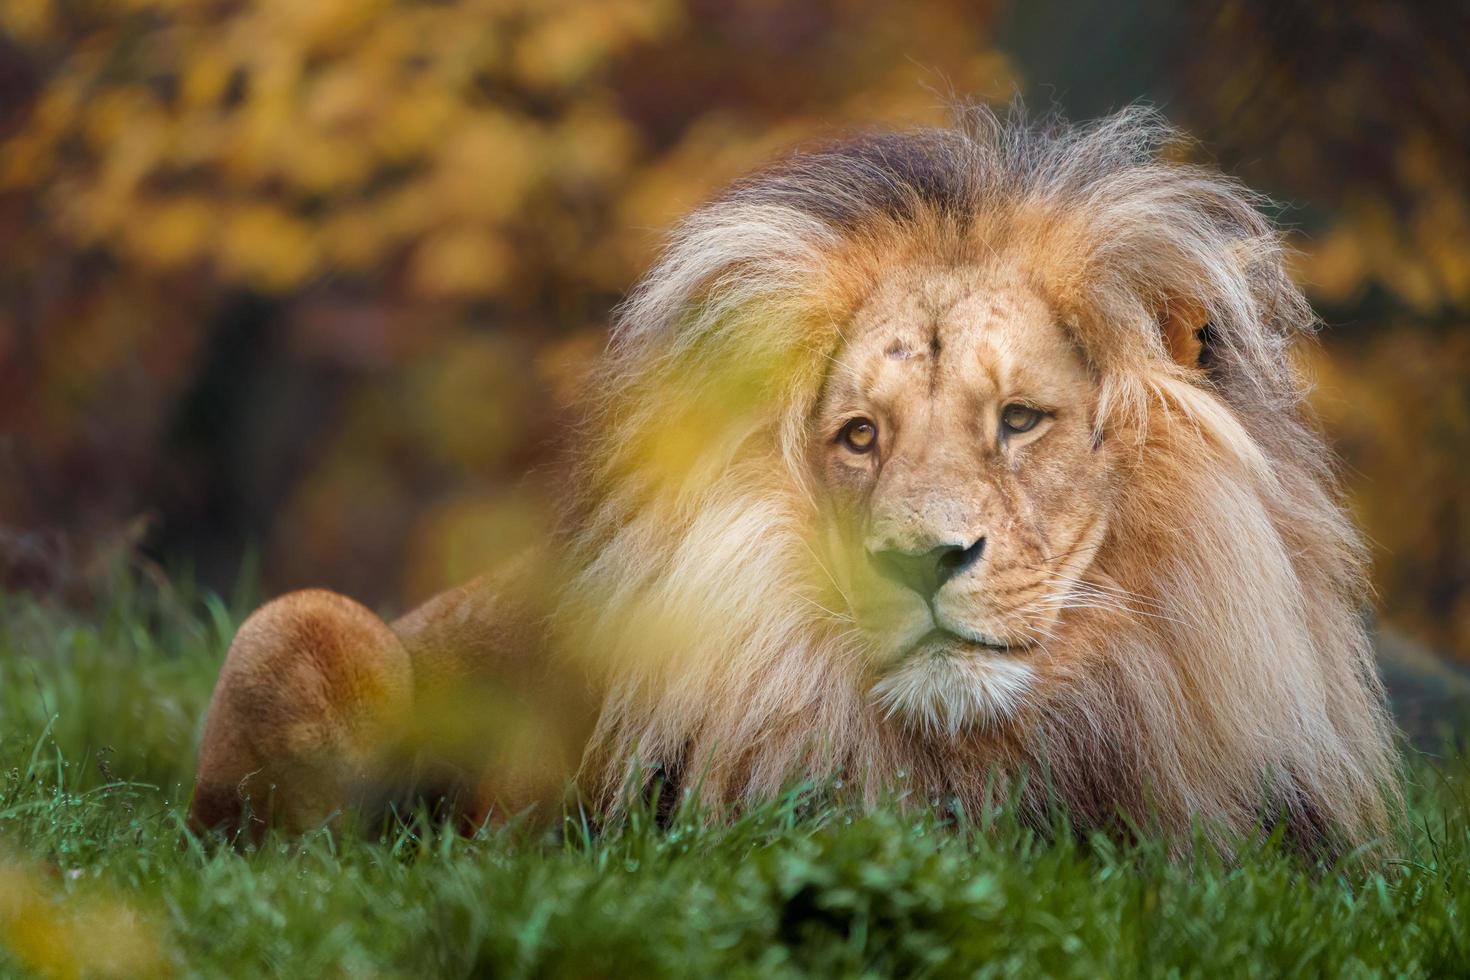 retrato de leão foto